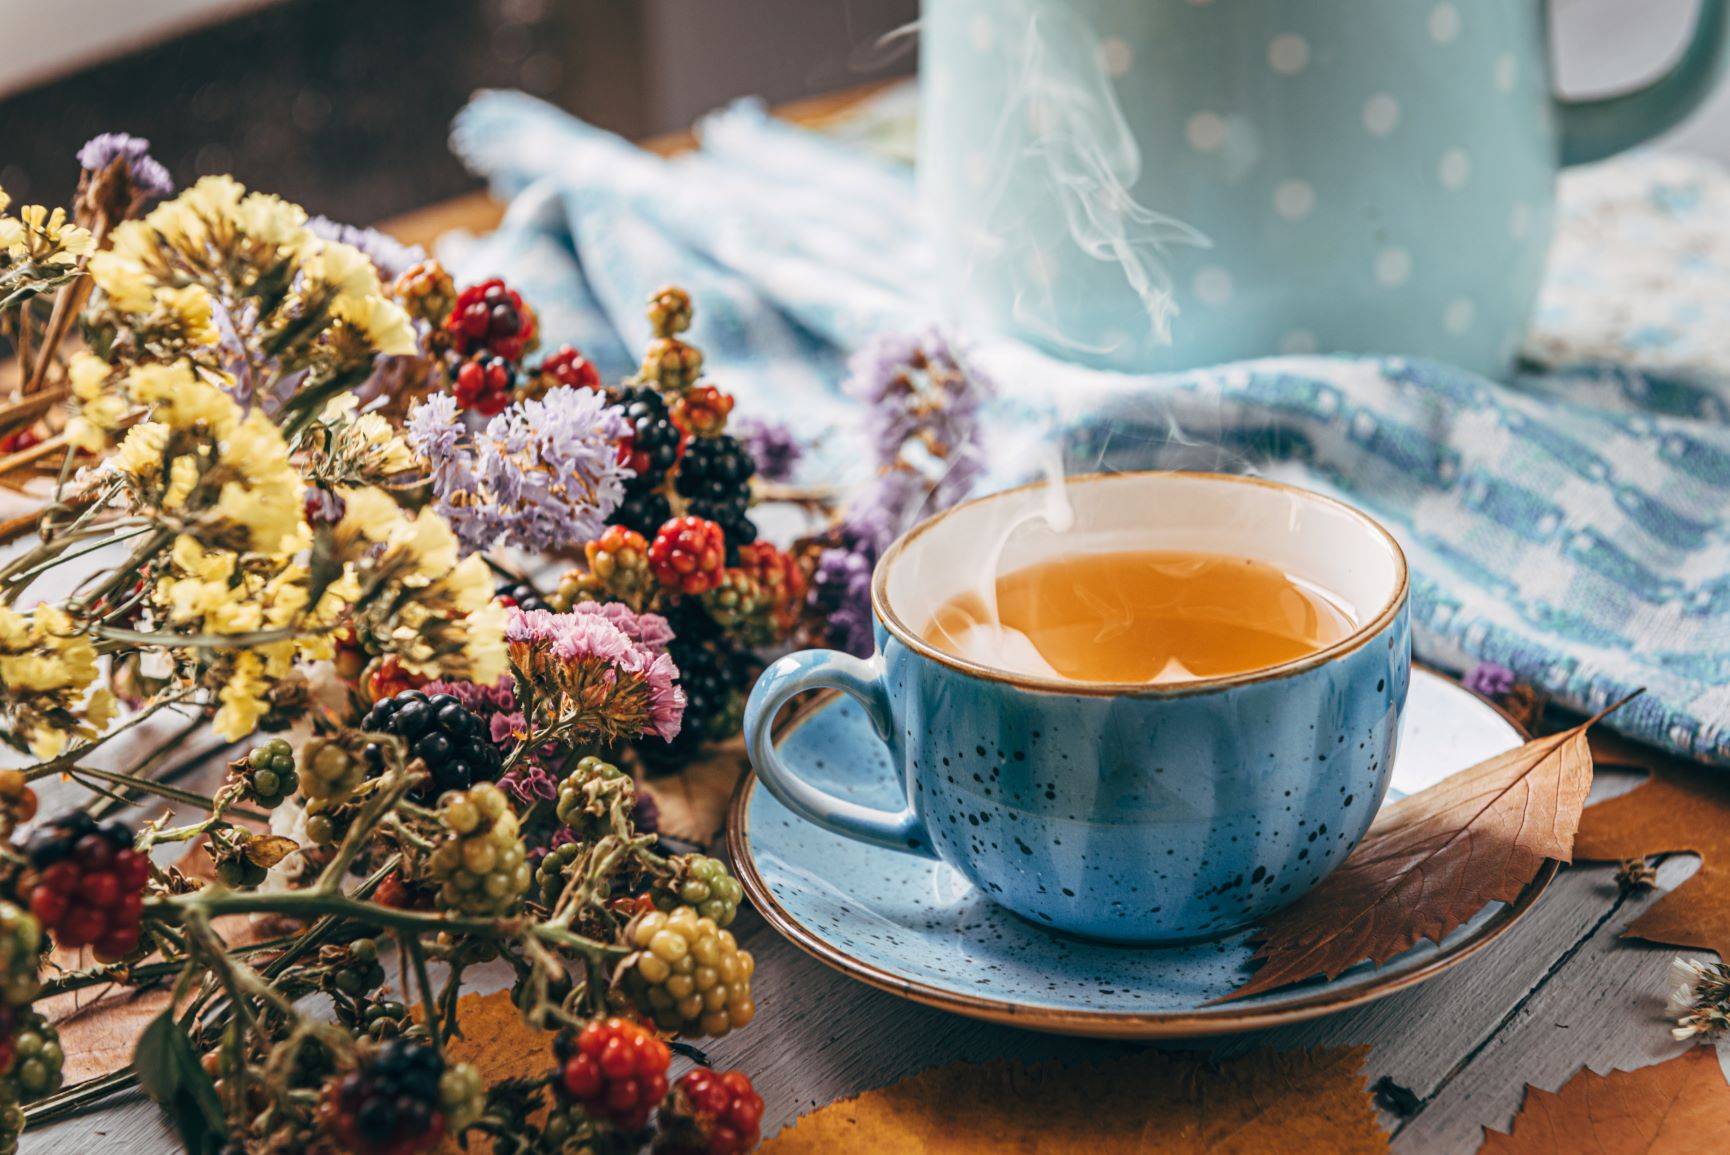 Herbata na kaszel - jak ją przyrządzić? Przepis na herbatę ziołową na kaszel. Niebieska filiżanka gorącej herbaty stoi na drewnianym stole obok bukietu ususzonych kwiatów.